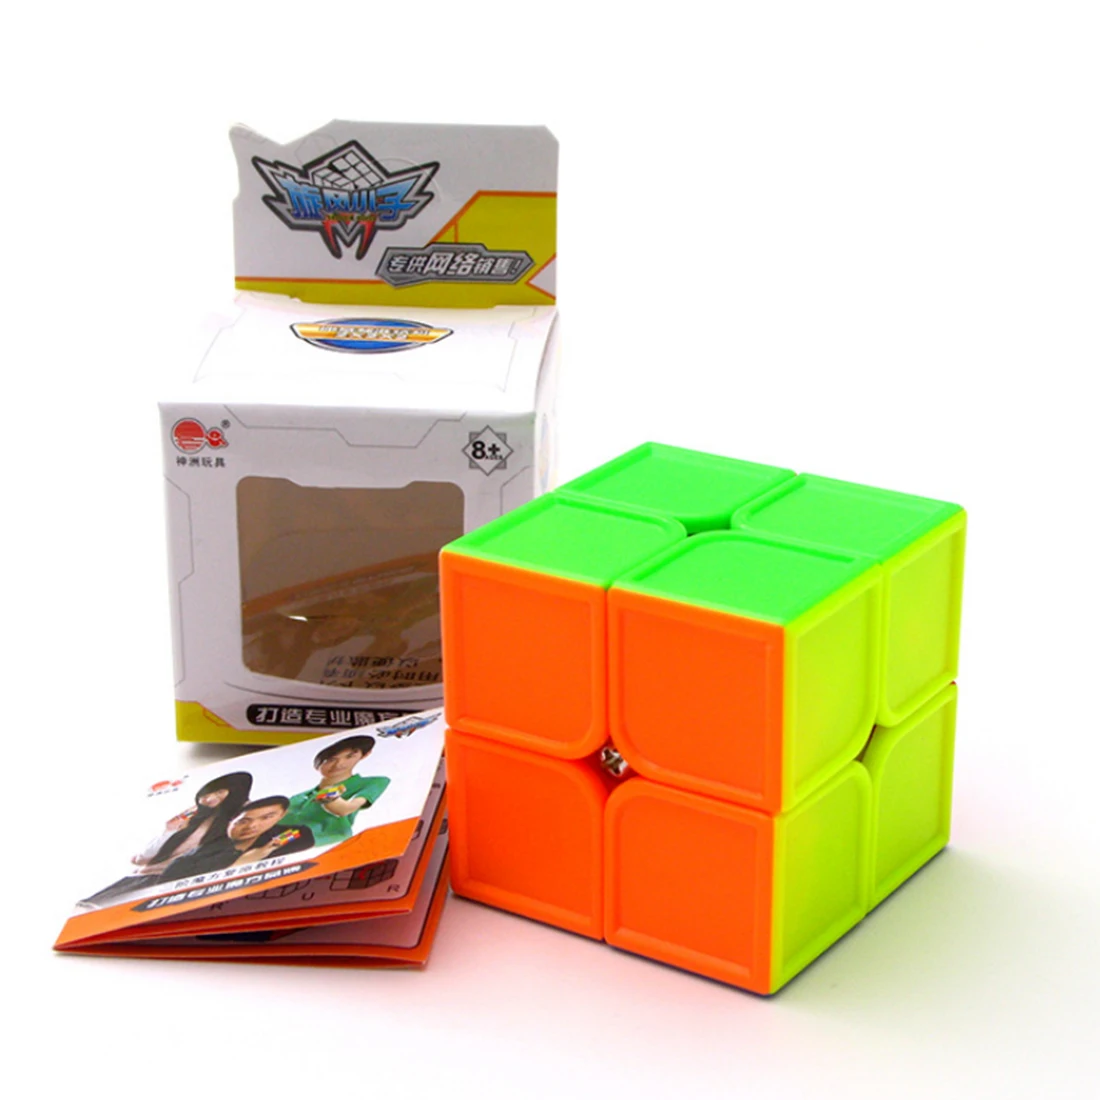 Cyclone Boys 2X2X2 волшебный куб вогнутая сторона 2X2 50 мм скоростной Карманный стикер головоломка куб профессиональные Развивающие игрушки для детей